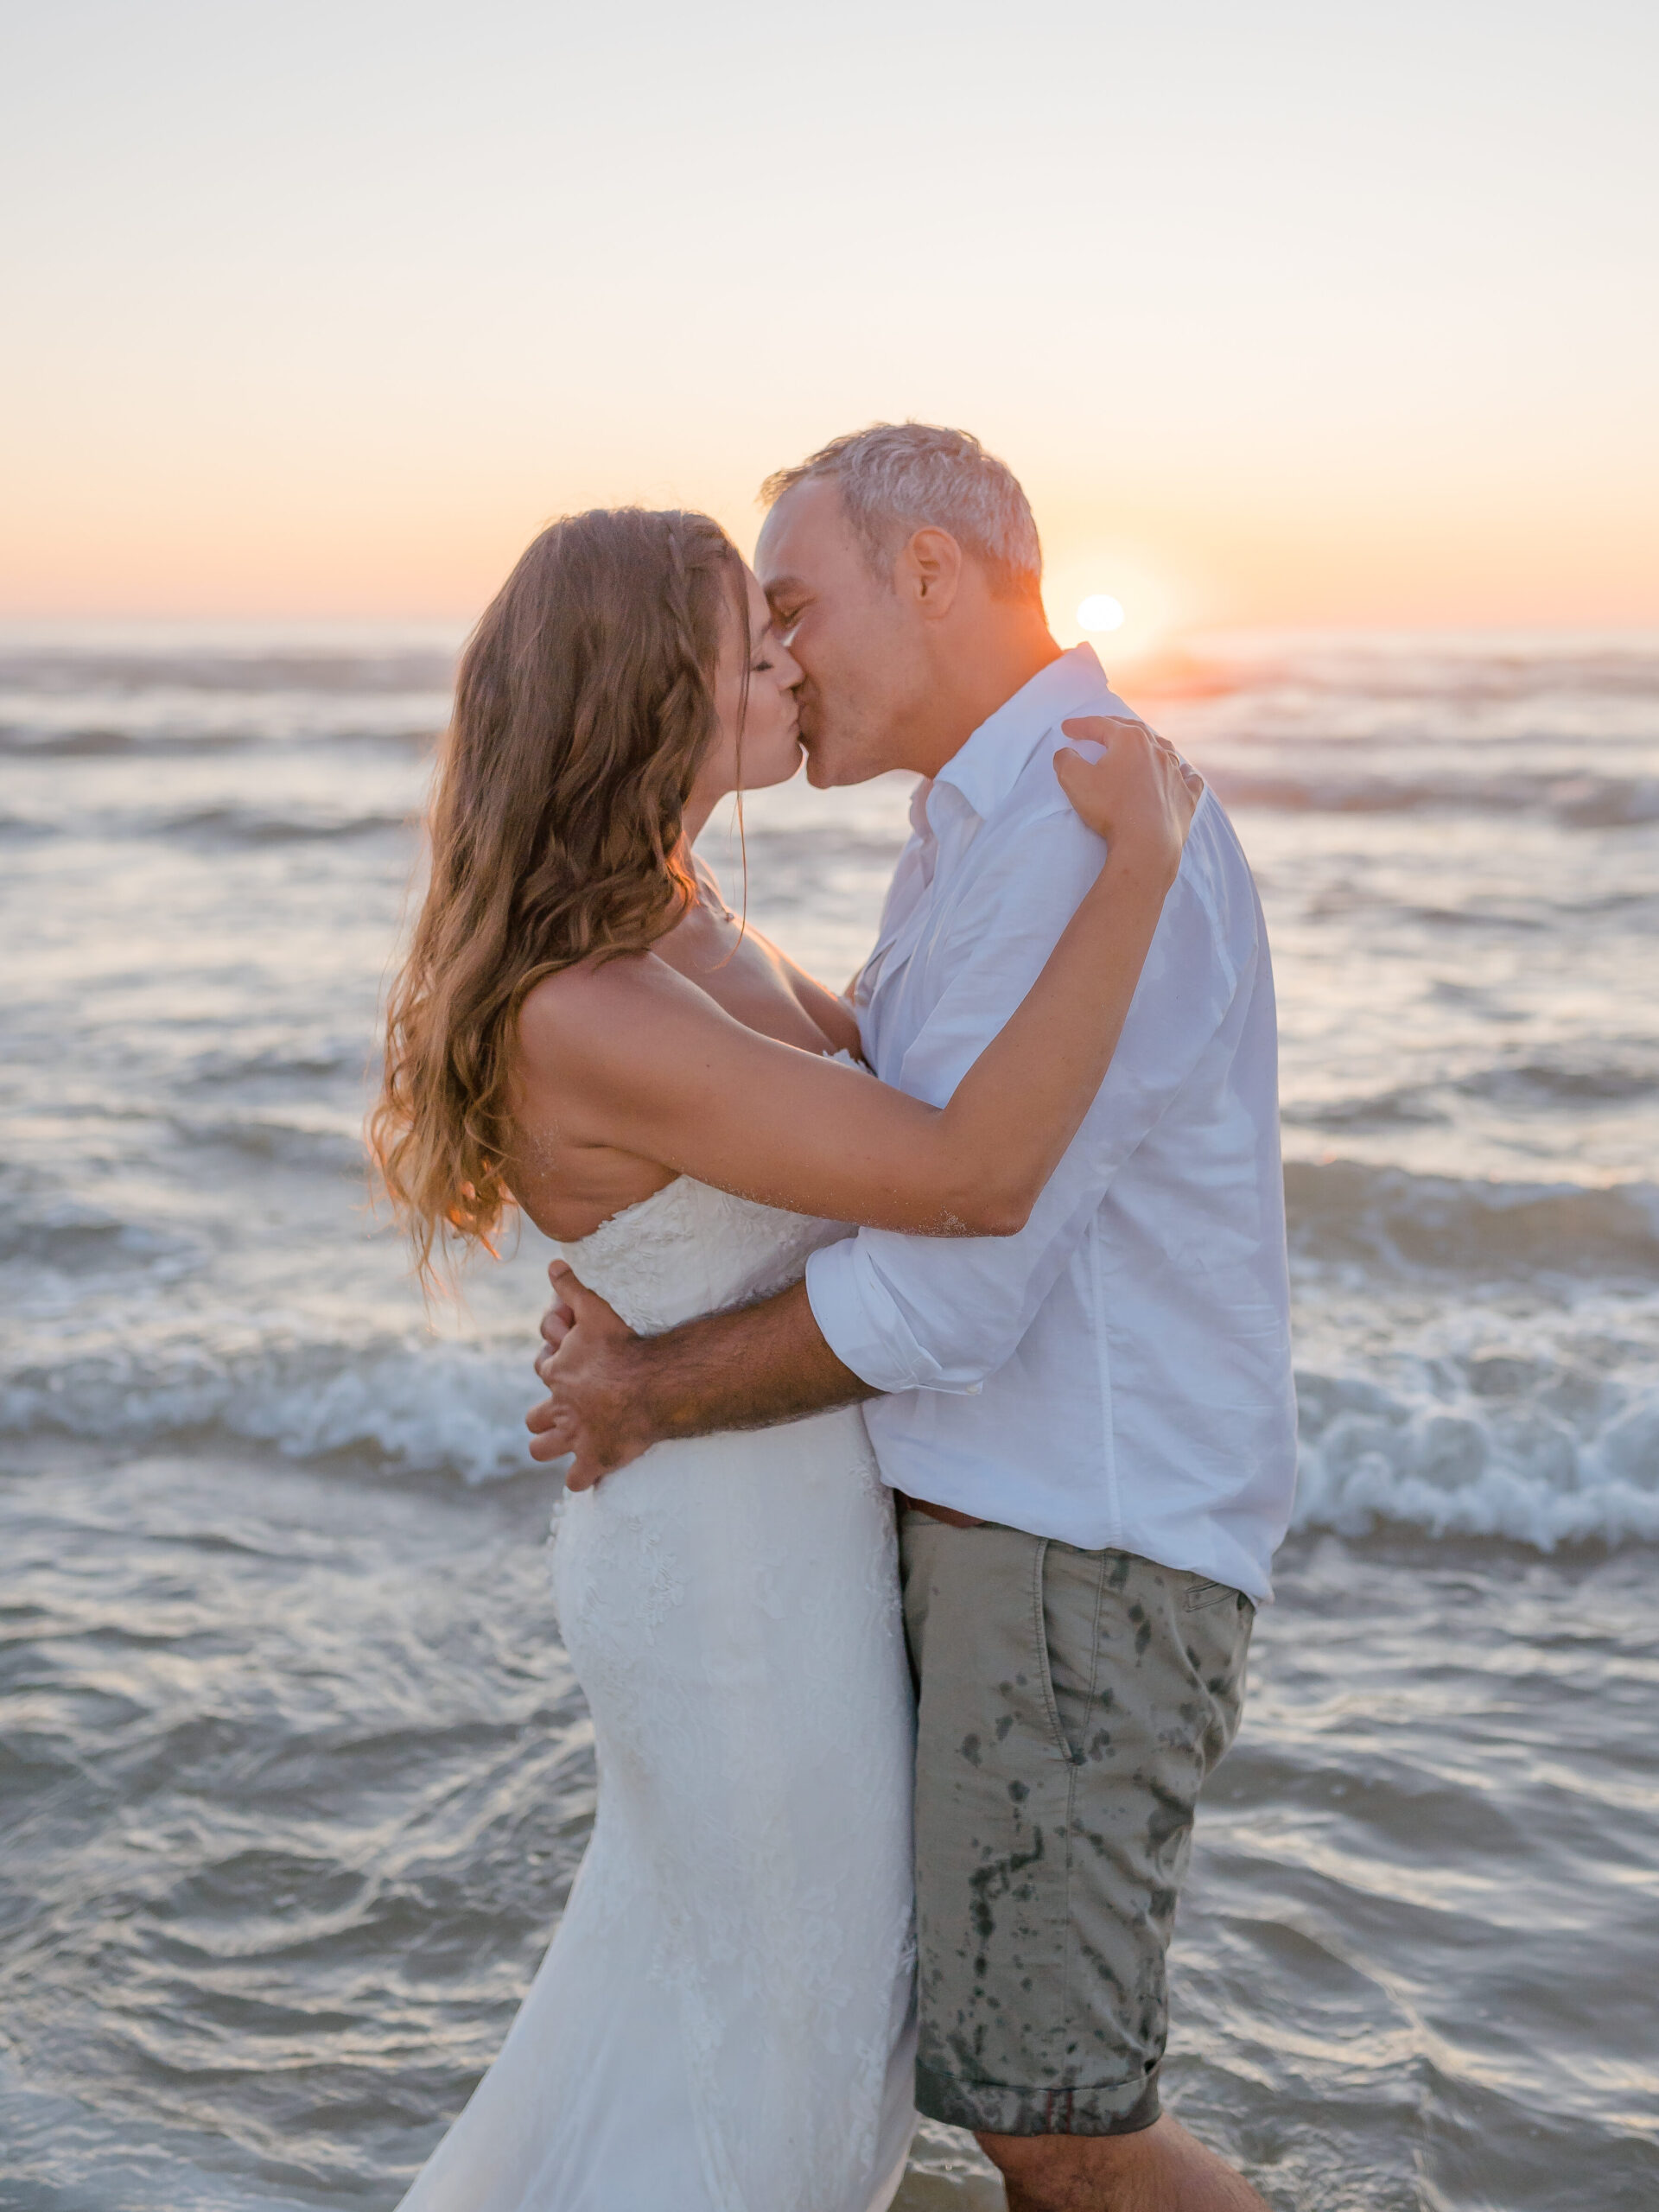 Ein Brautpaar küsst sich beim Sonnenuntergang am Strand in Portugal.